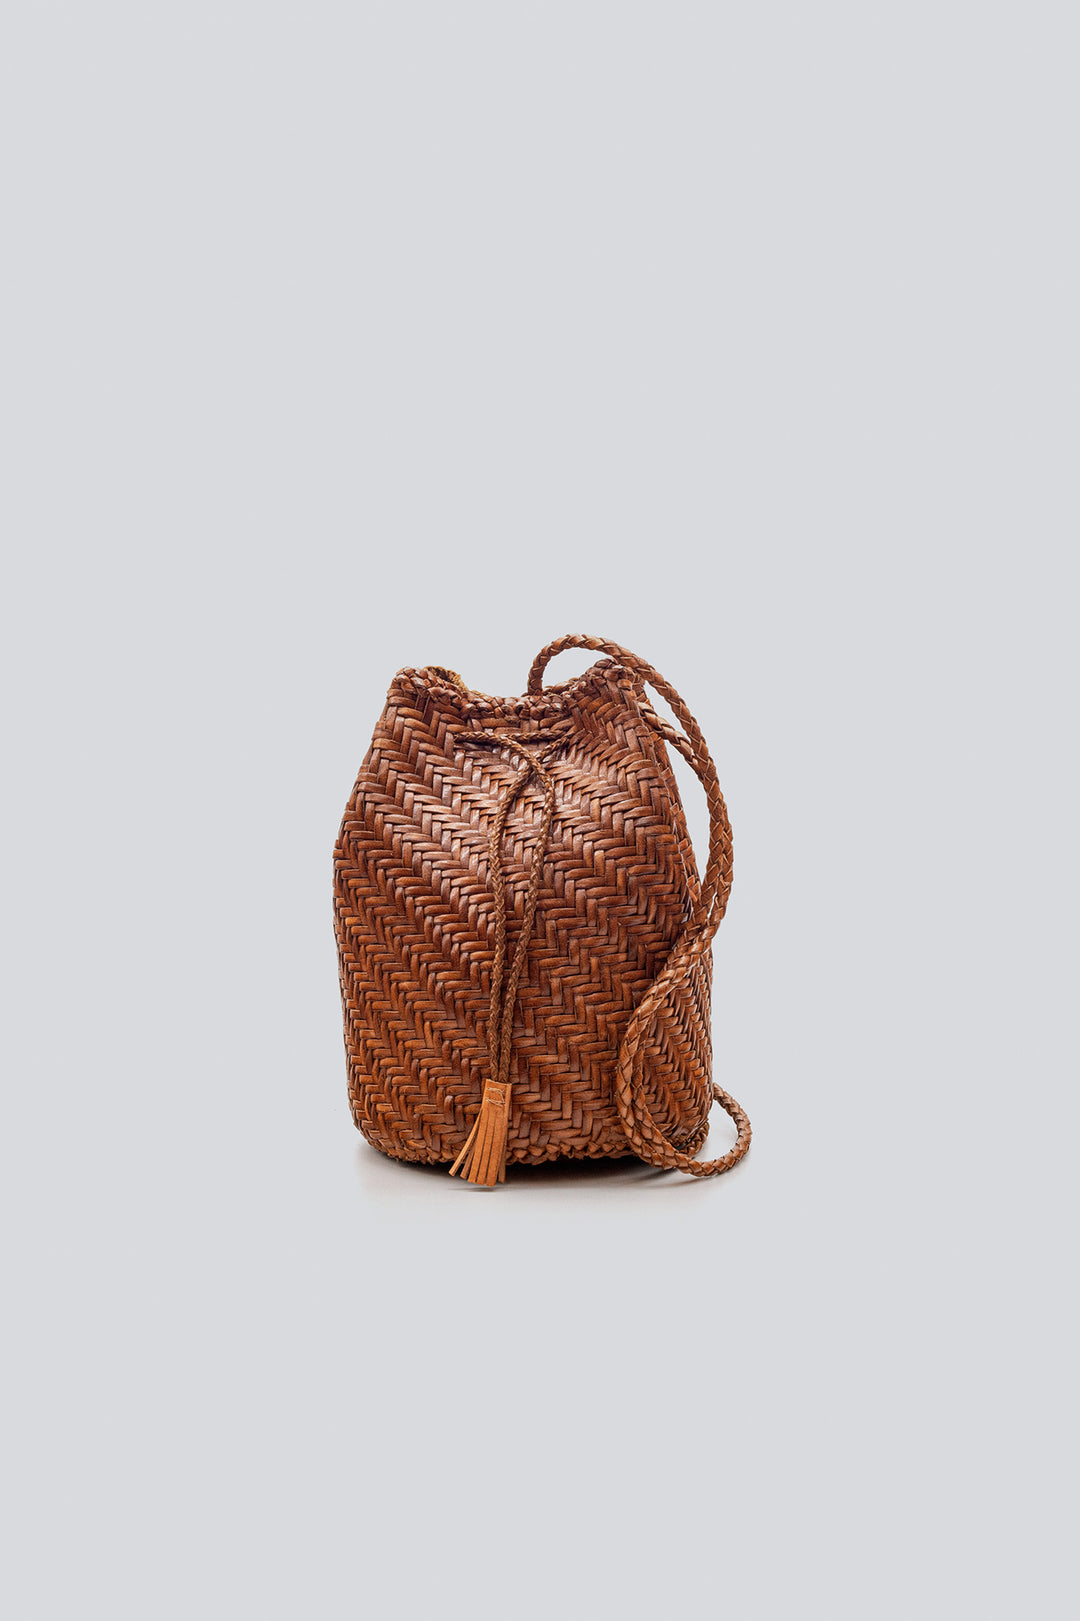 Dragon Diffusion- anyone have one? : r/handbags